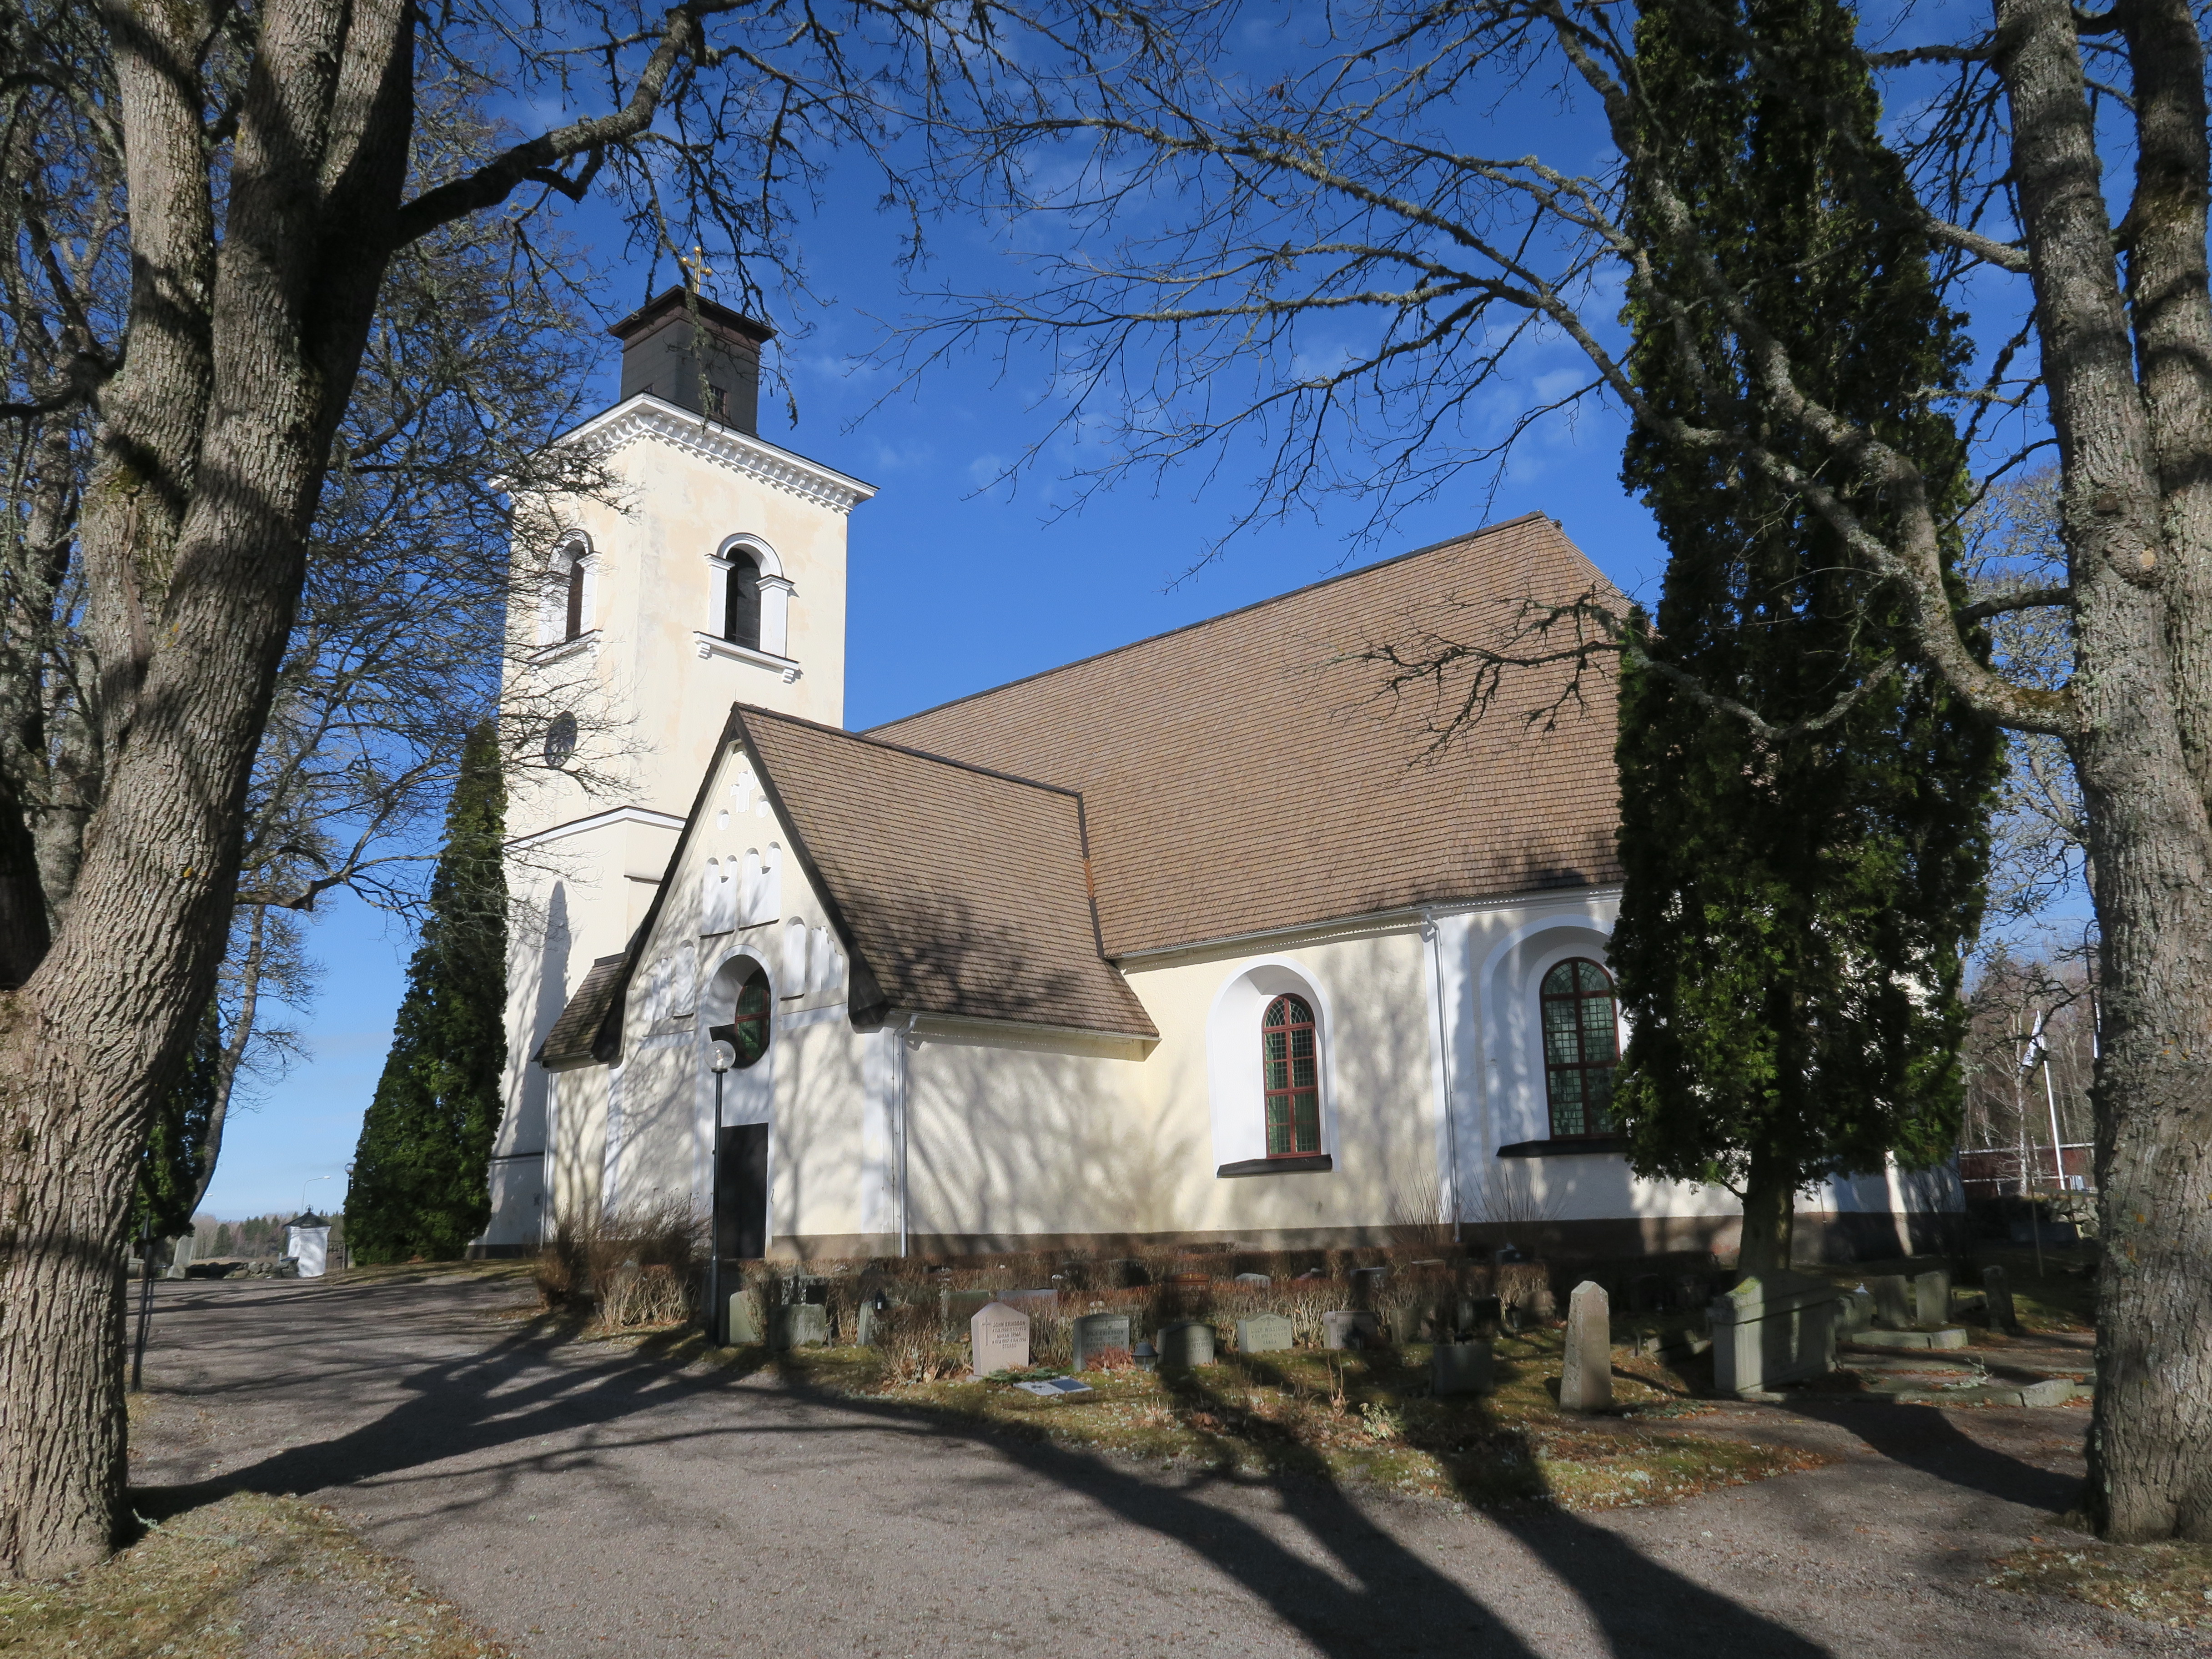 En vit kyrka med ett torn, omgiven av träd.